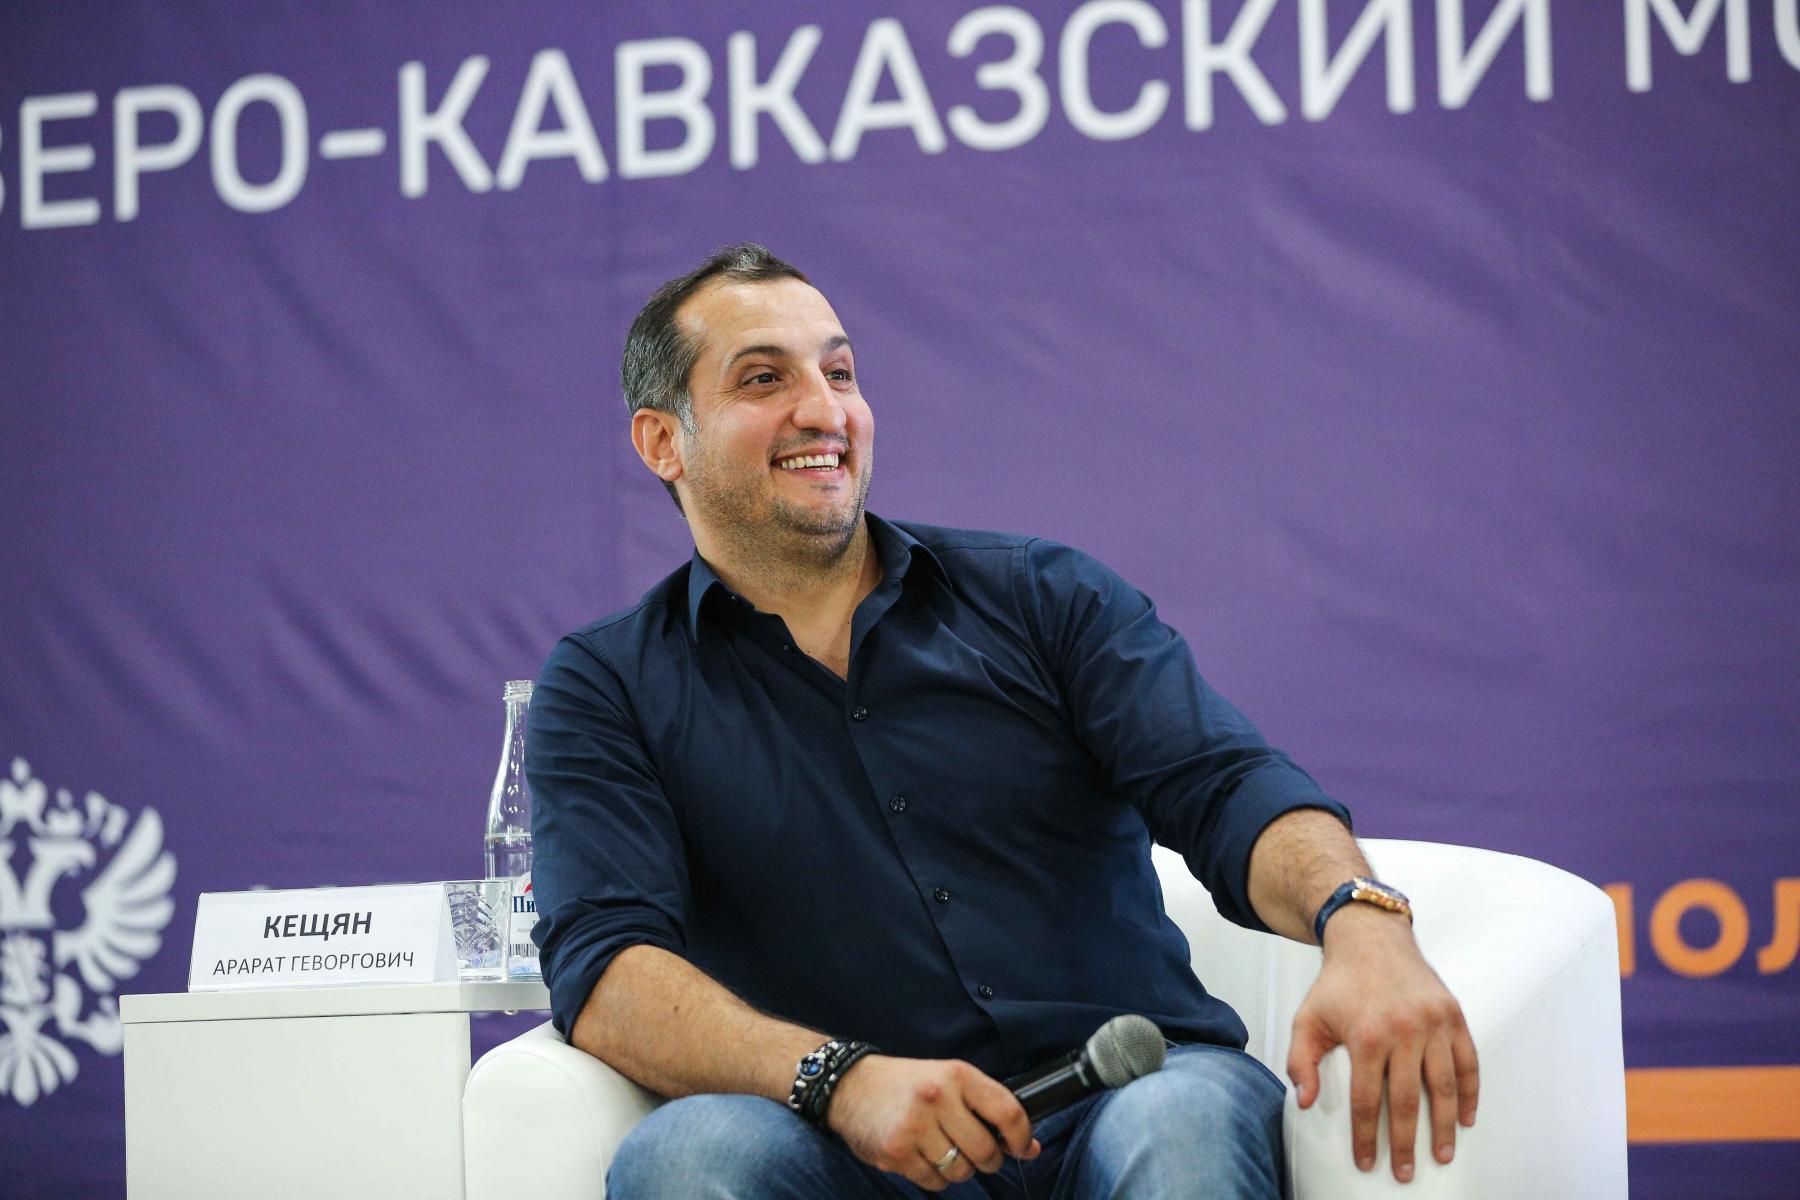 Секретами успеха с машуковцами поделились Арарат Кещян и Алан Батаев |  Ставропольская правда